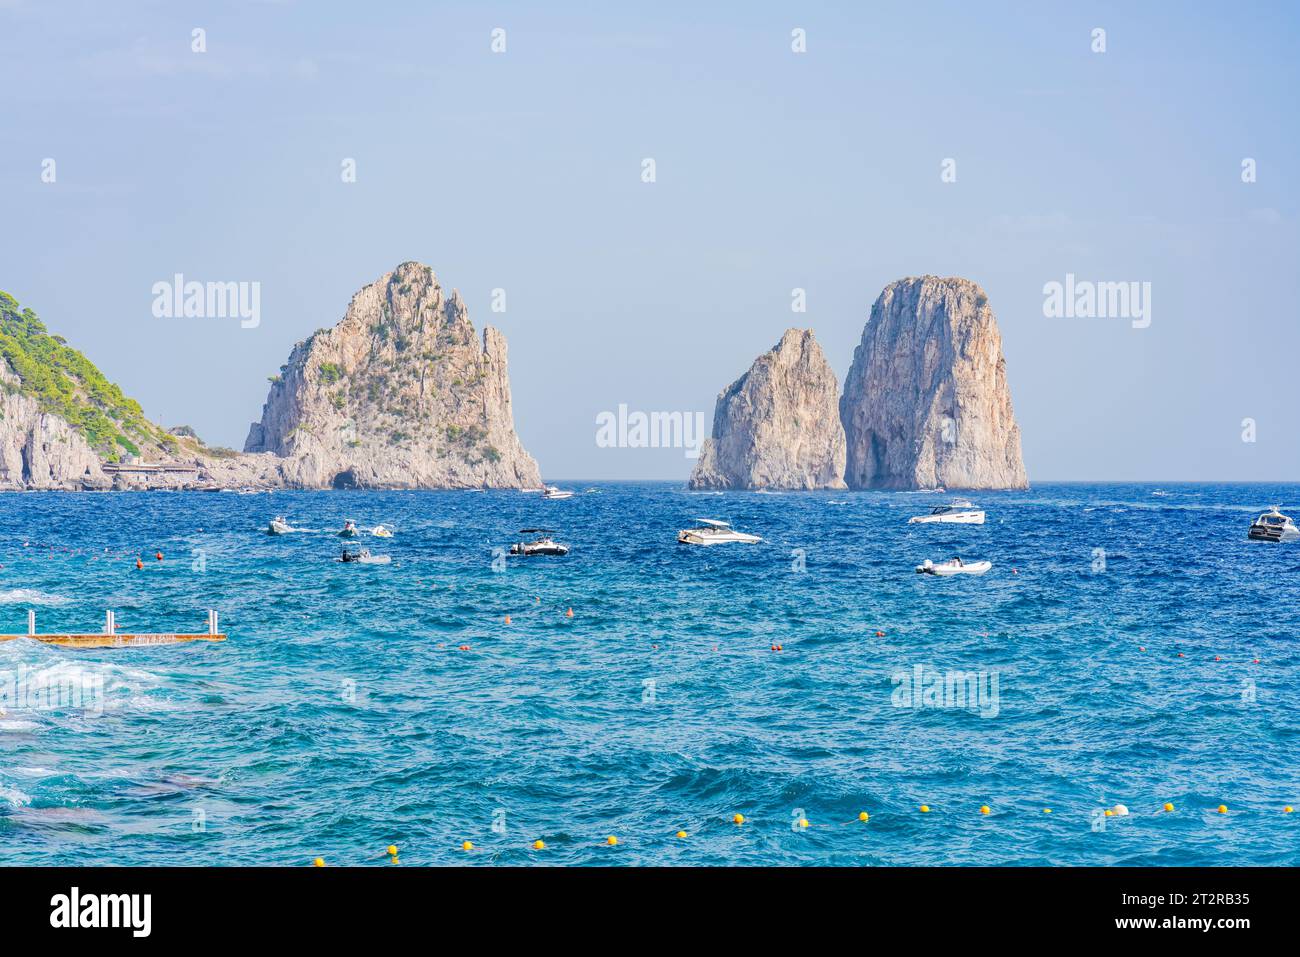 Vue sur les rochers Faraglioni et une baie de Naples. Île de Capri, Italie Banque D'Images